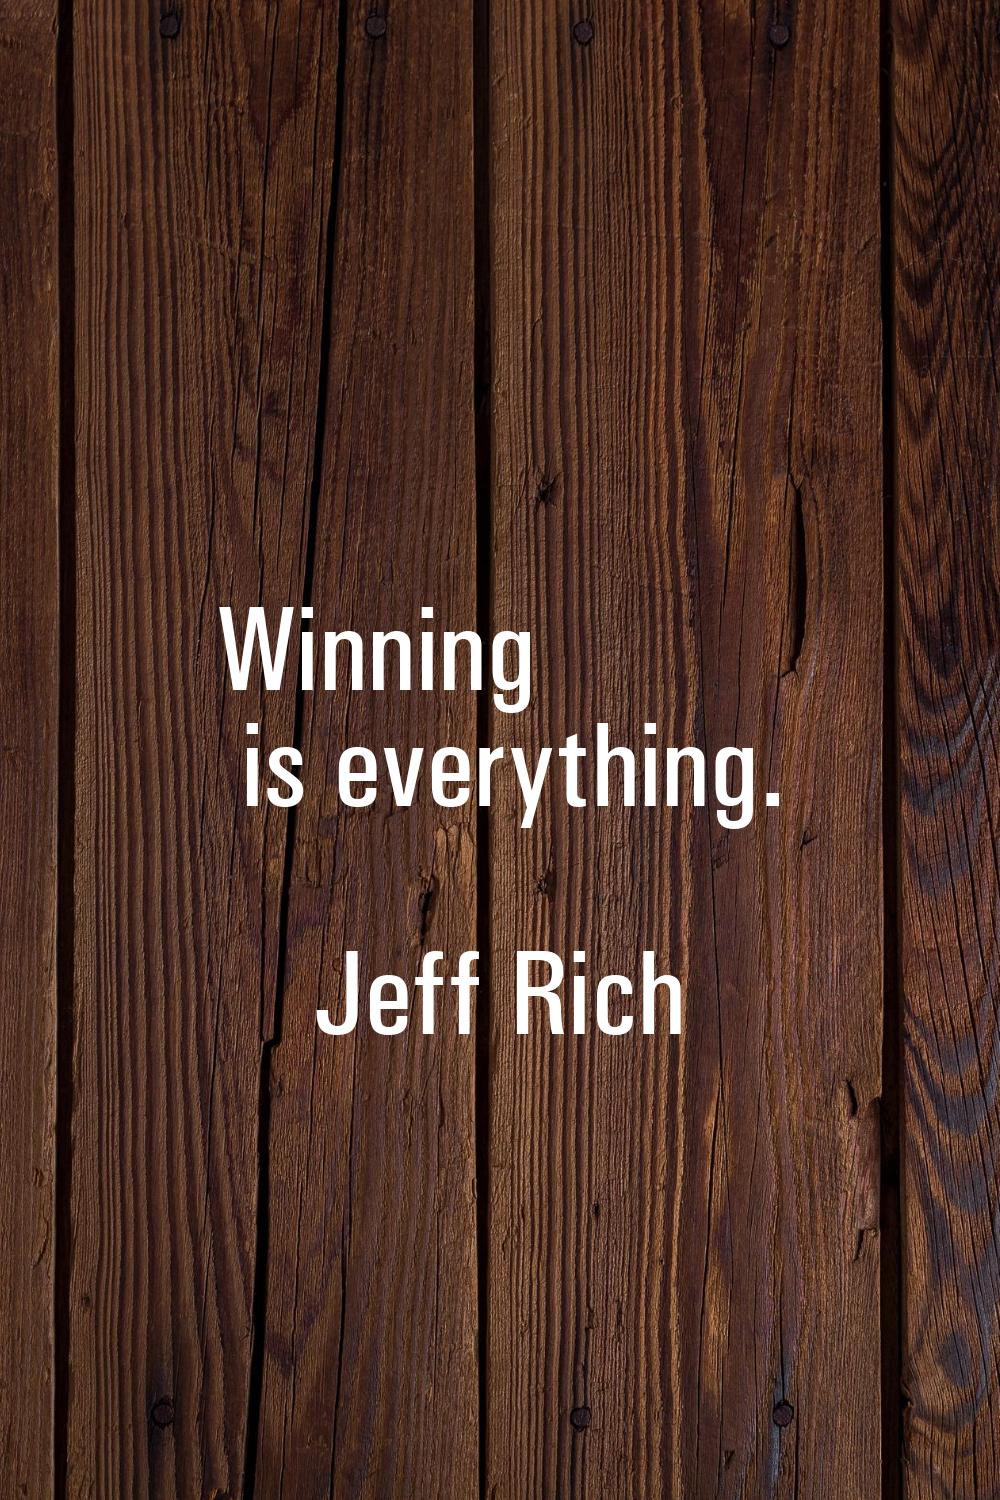 Winning is everything.